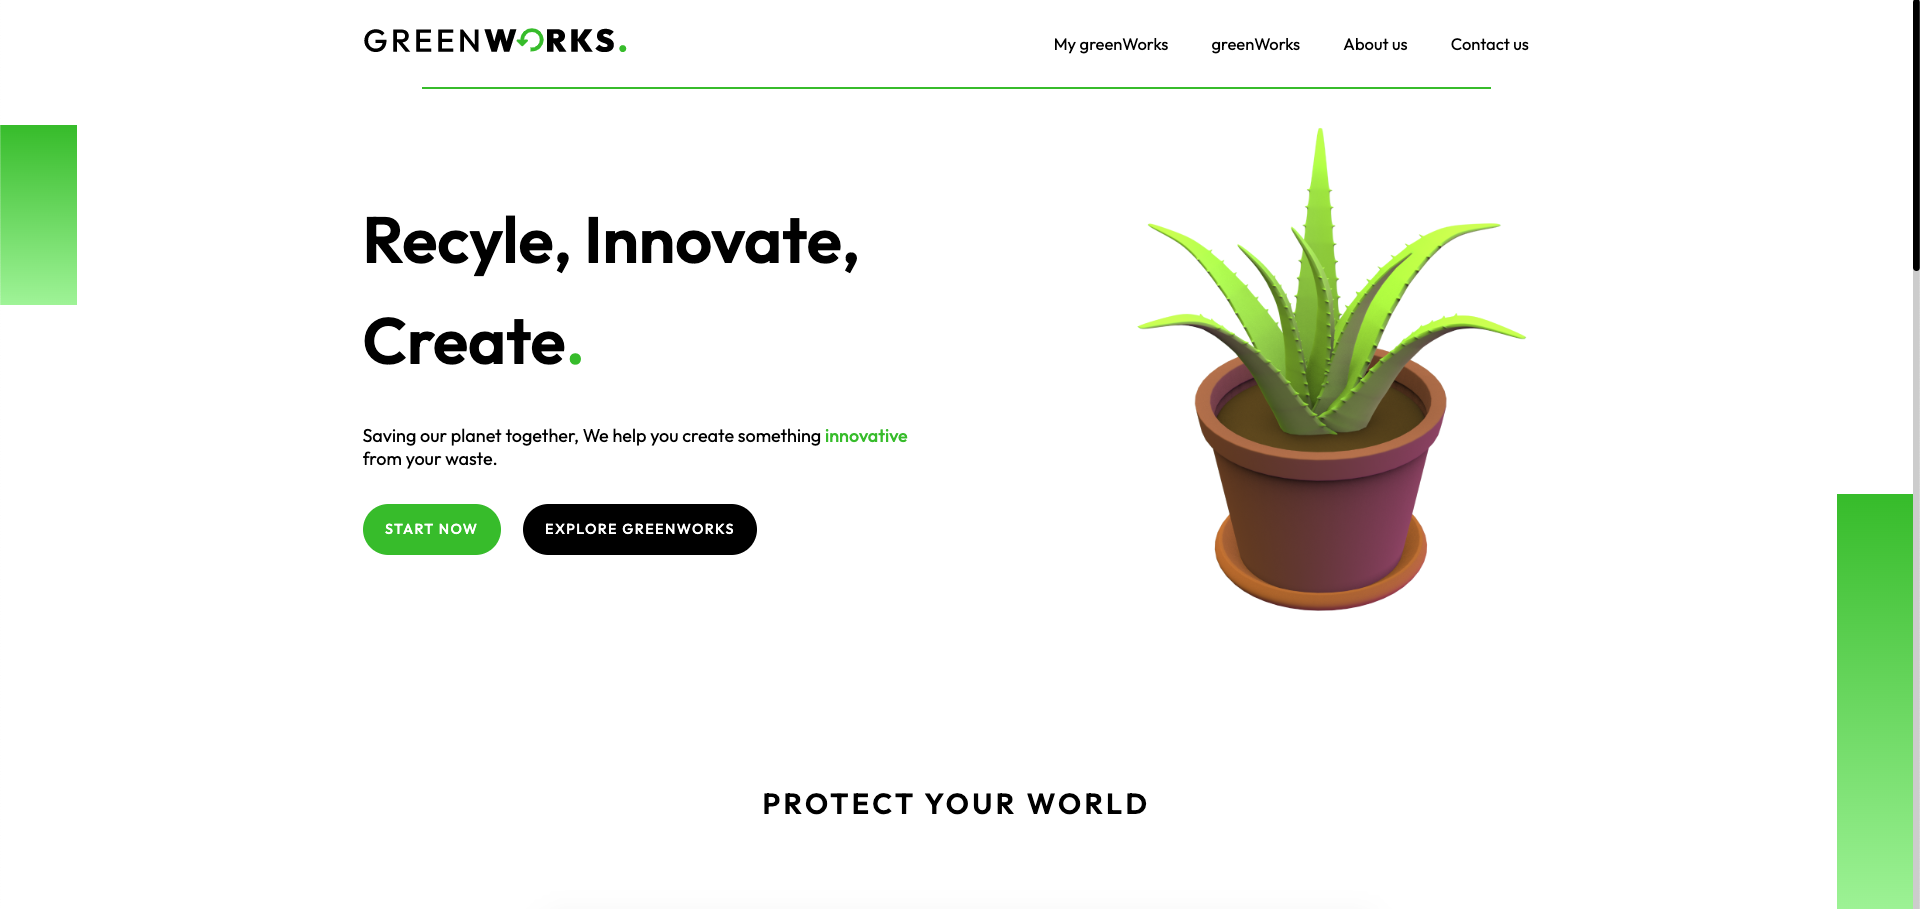 GreenWorks